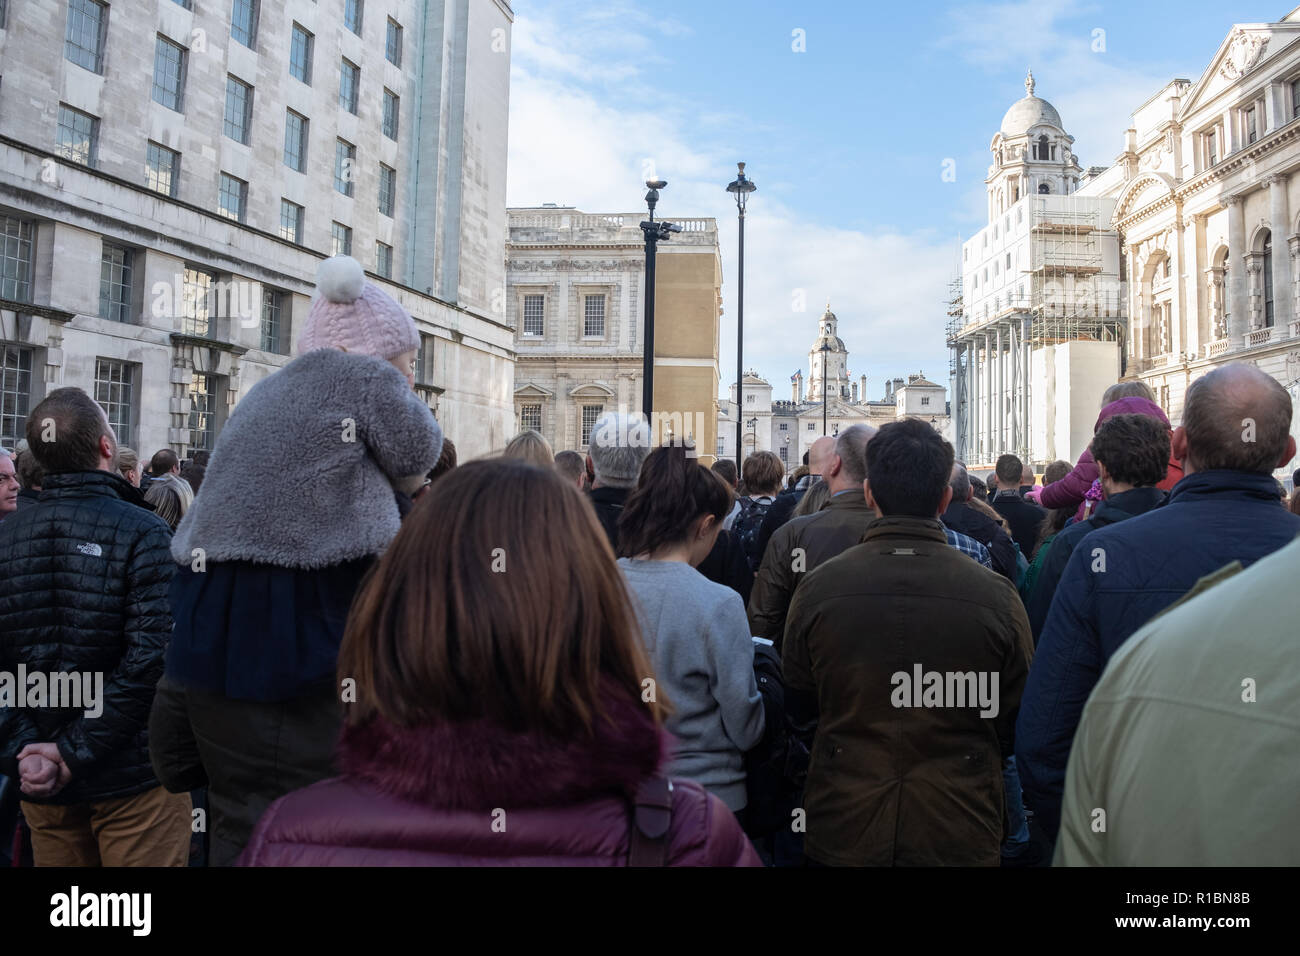 London UK, 11 Novembre 2018 : de longues files d'attente de personnes qui fréquentent le Service national du souvenir au monument de la guerre, à Londres, le Dimanche du souvenir. Crédit : à vue/Photographique Alamy Live News Banque D'Images